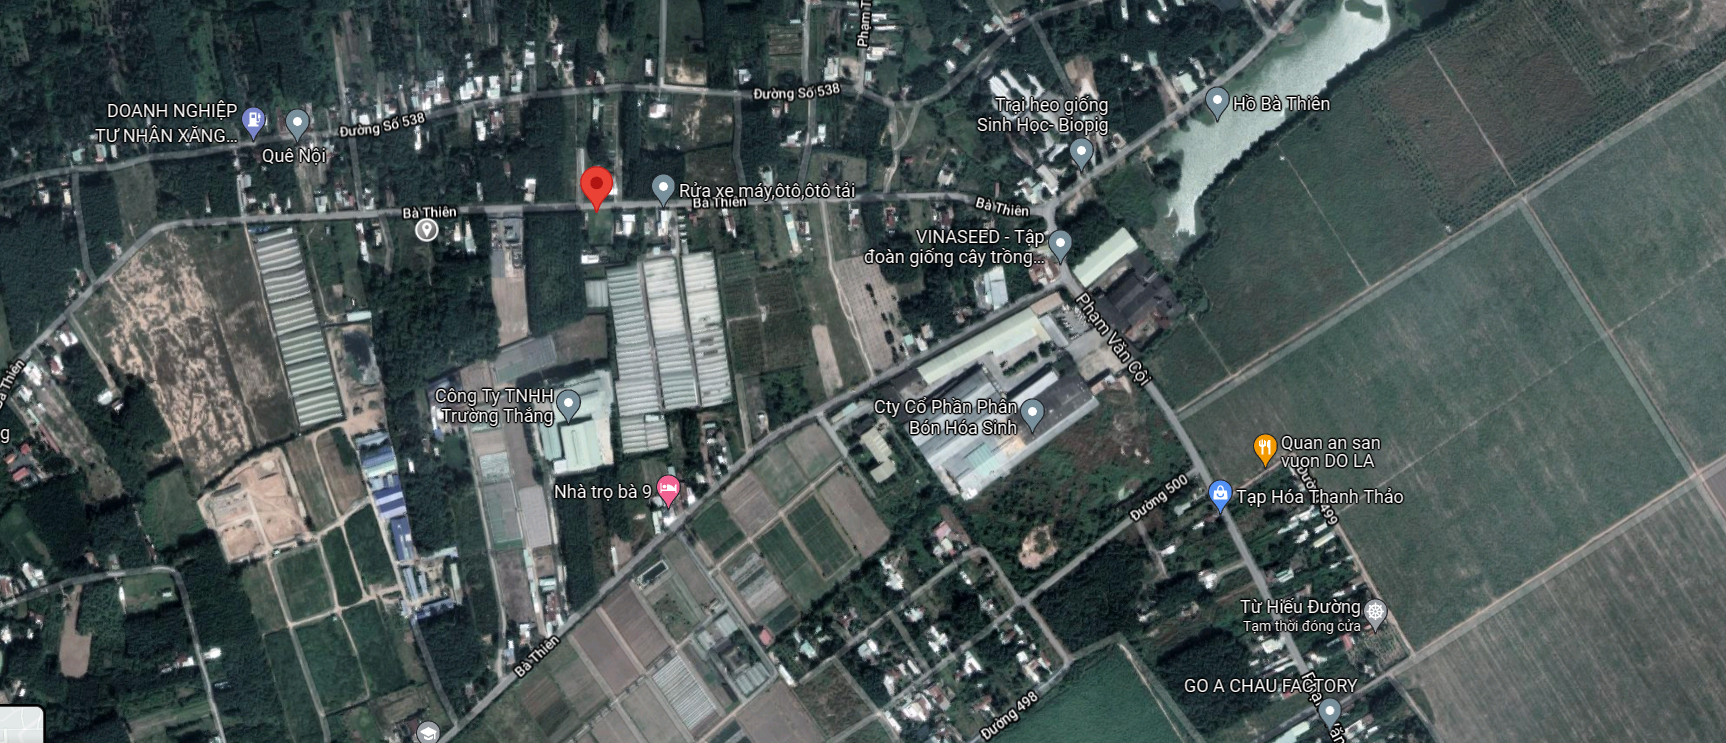 Bán  đất thổ cư 243m² tại đường Bà Thiên, Xã Nhuận Đức, Huyện Củ Chi, TP. Hồ Chí Minh giá 2.5 tỷ